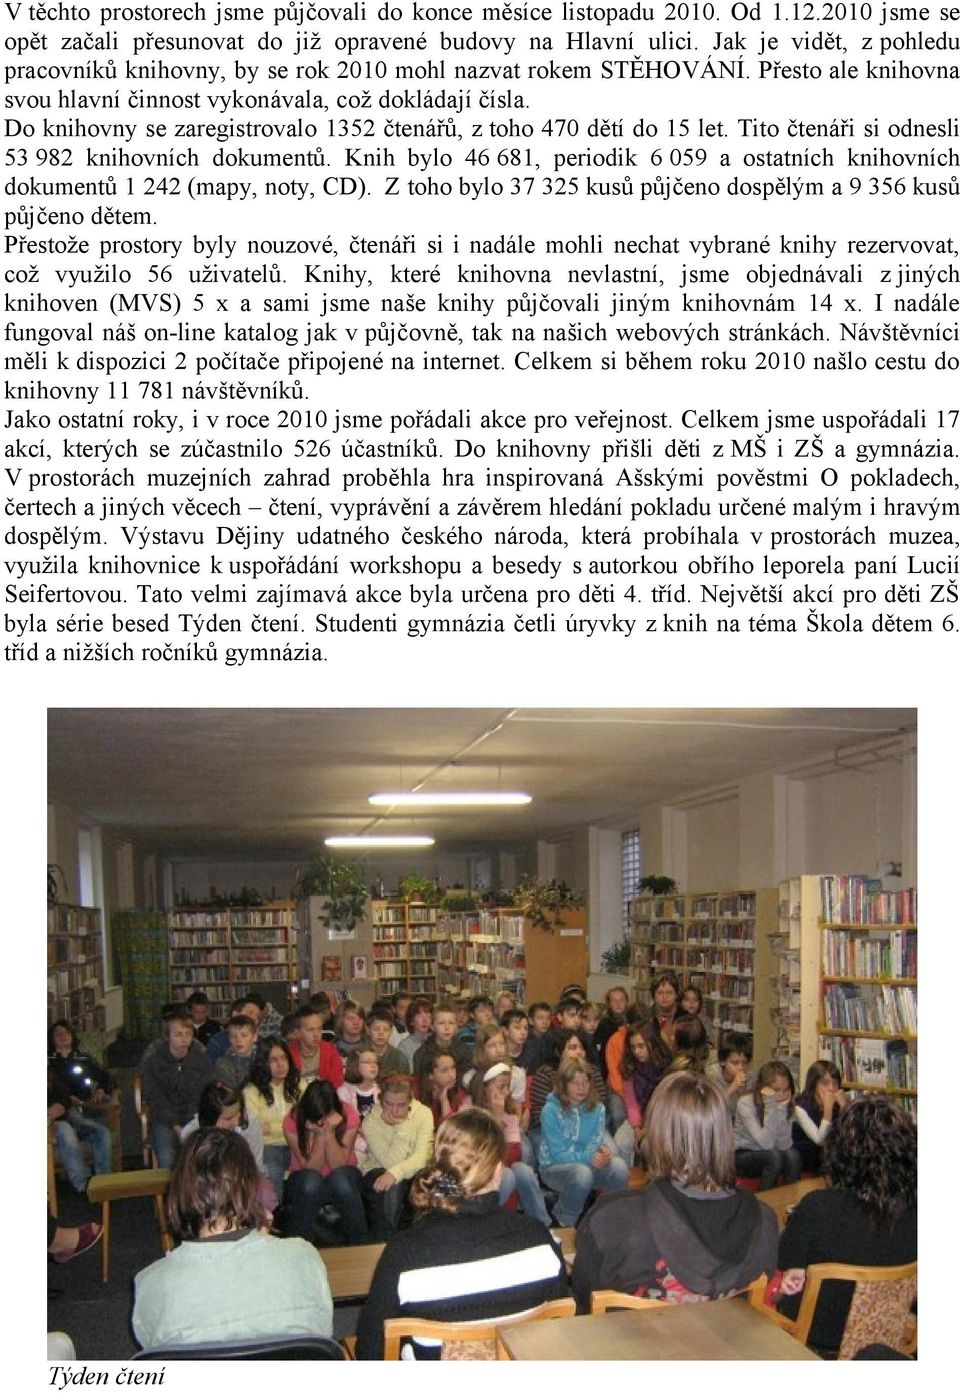 Do knihovny se zaregistrovalo 1352 čtenářů, z toho 470 dětí do 15 let. Tito čtenáři si odnesli 53 982 knihovních dokumentů.